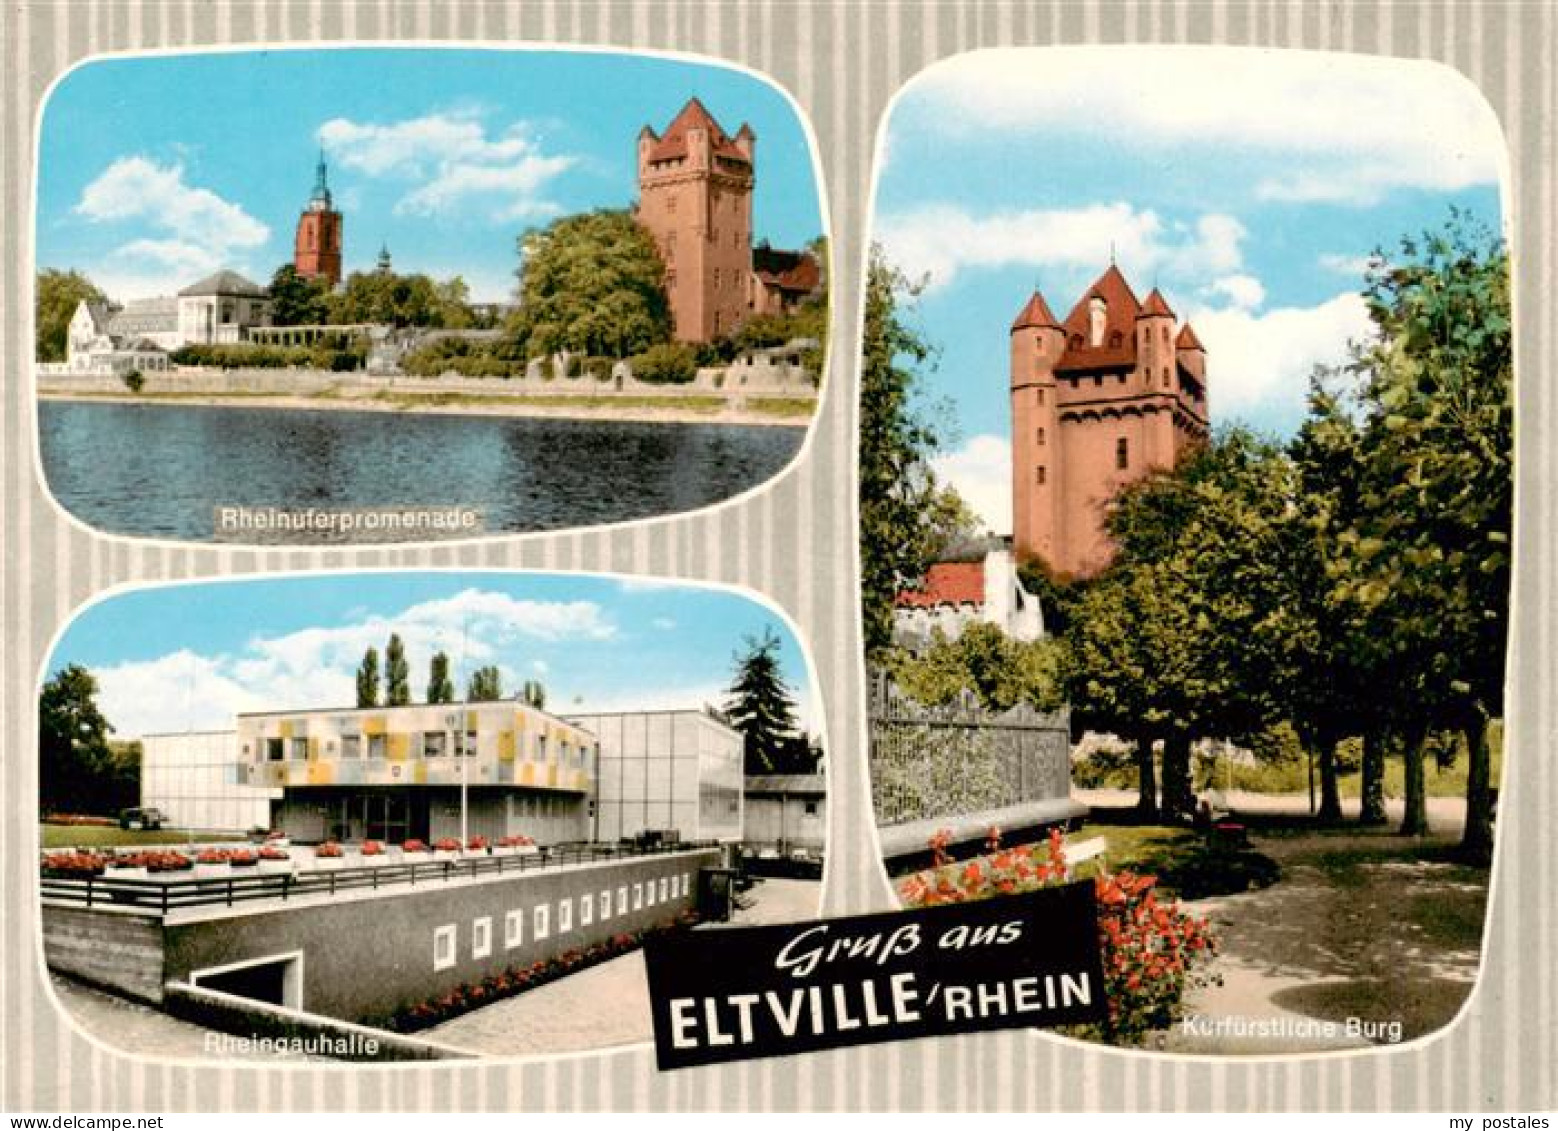 73935883 Eltville_Rhein Rheinuferpromenade Rheingauhalle Kurfuerstliche Burg - Eltville